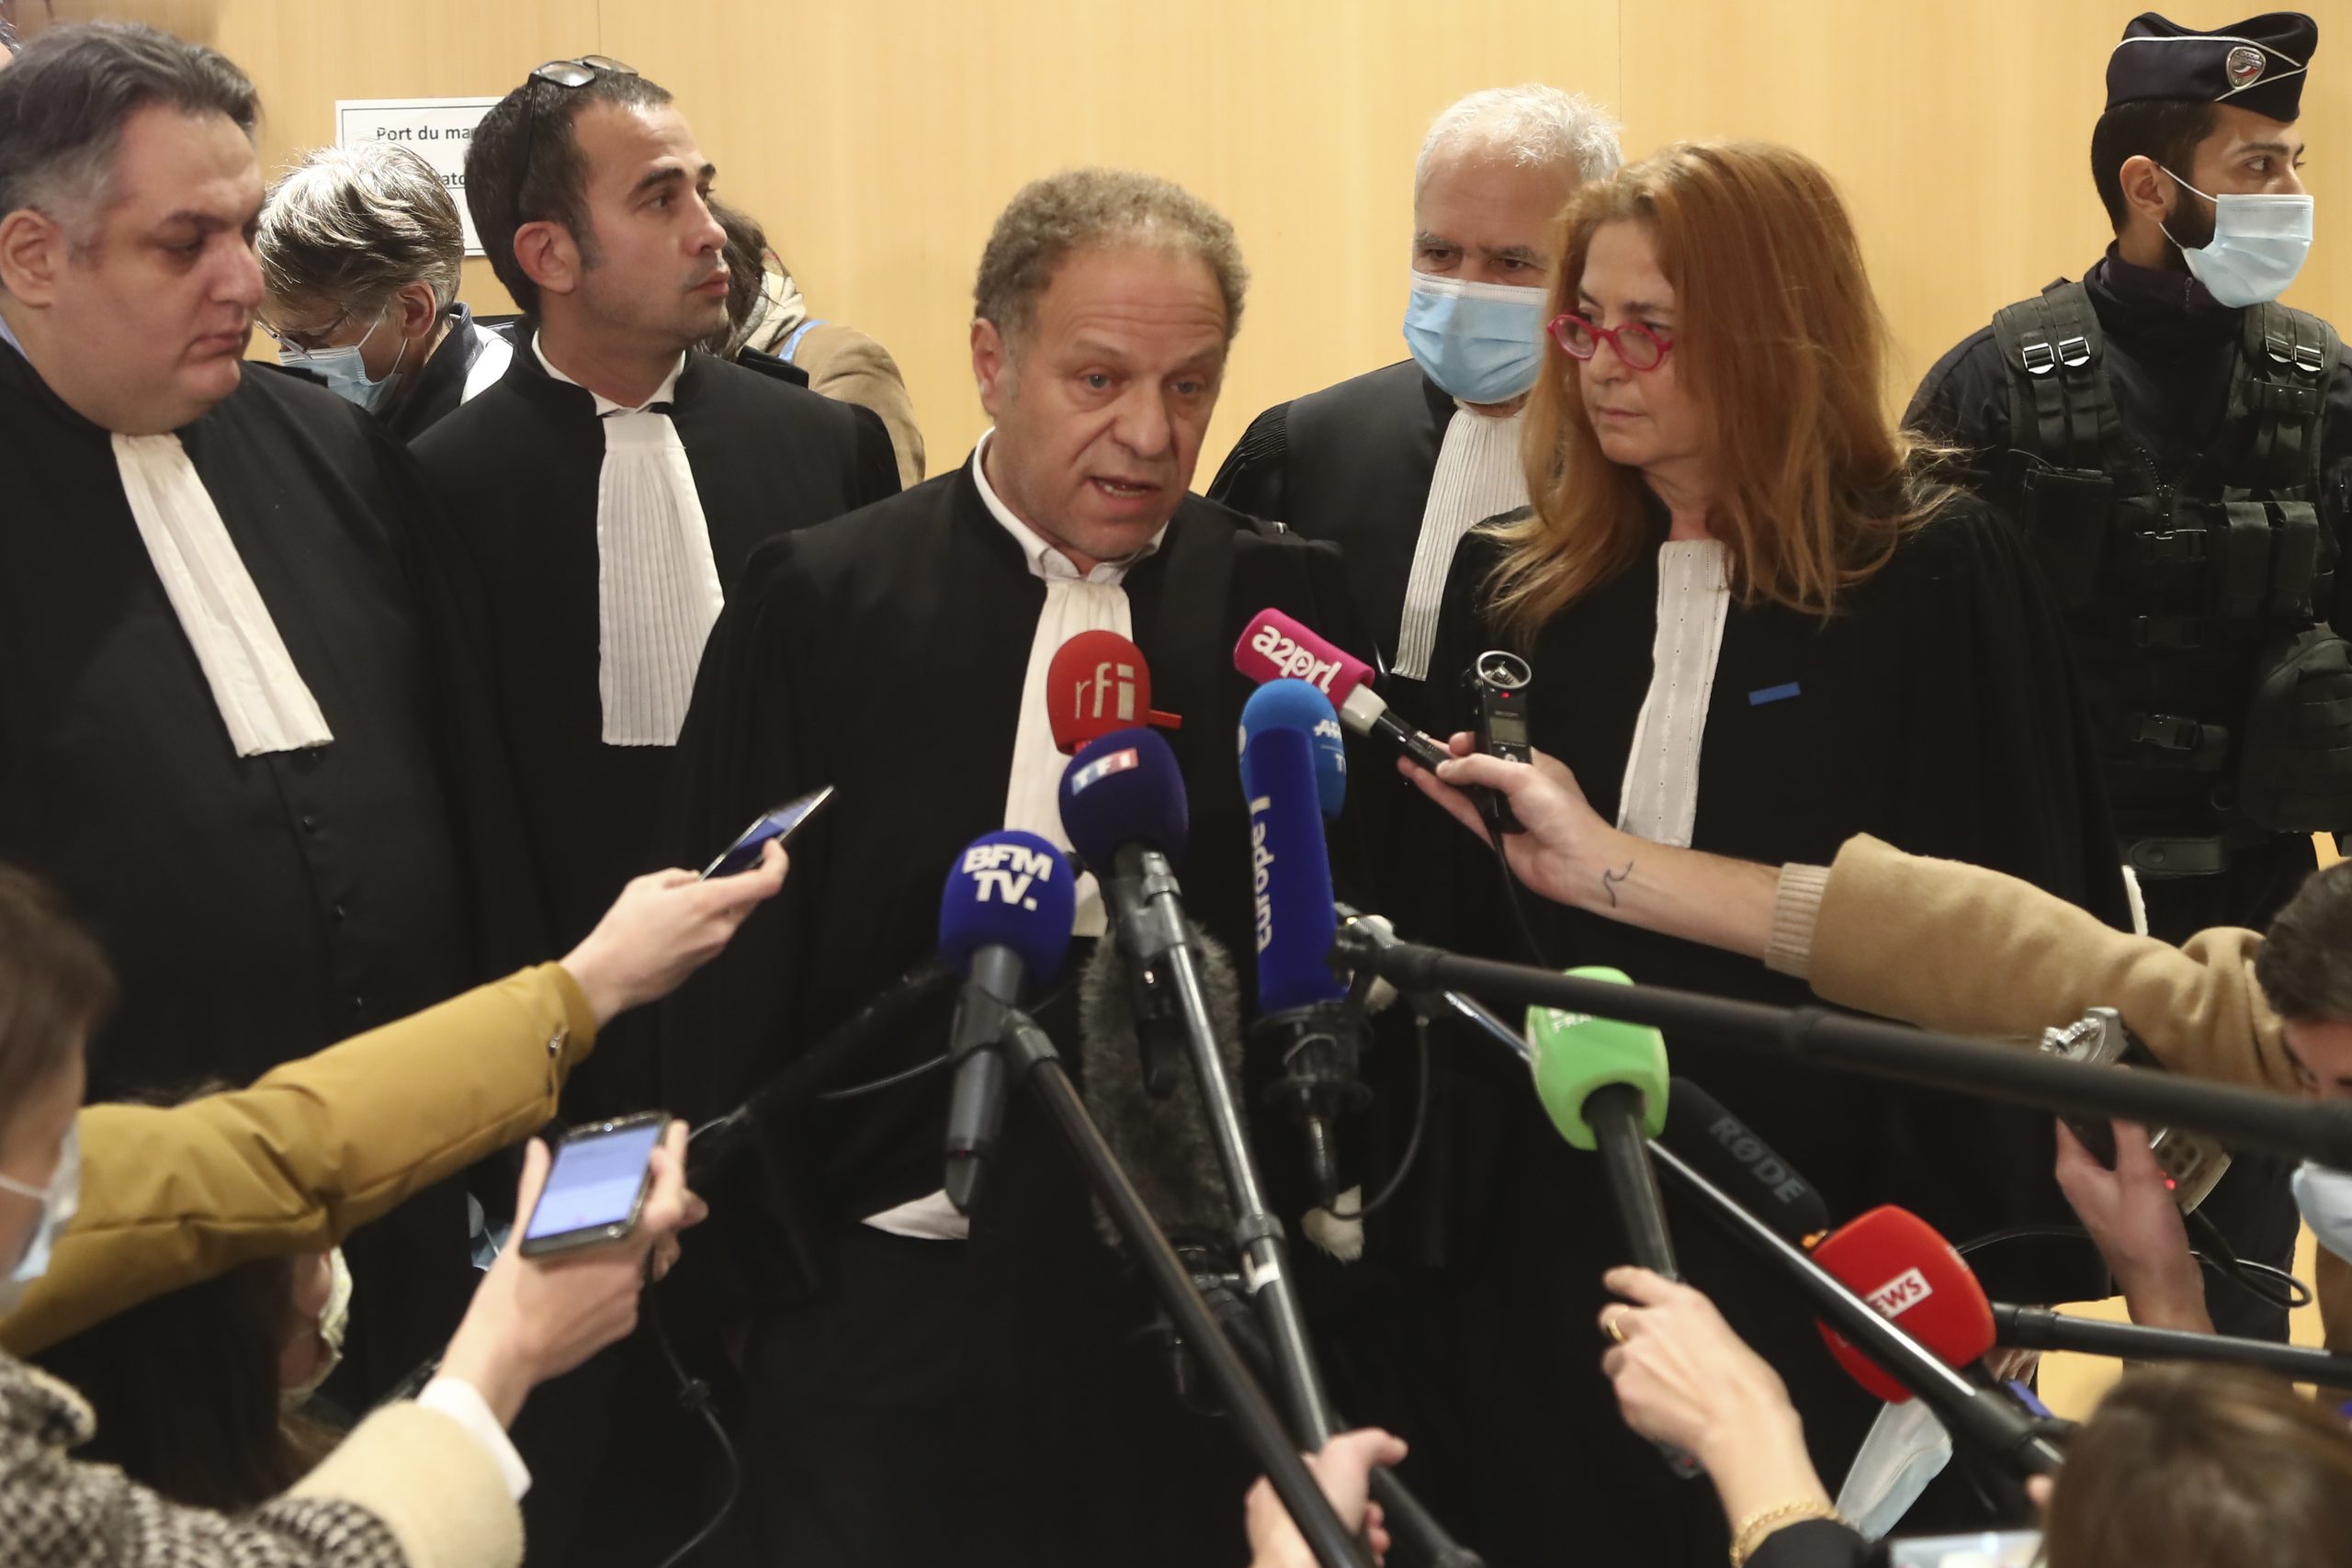 Sud u Parizu izrekao presude optuženima za terorističke napade 2015. 1